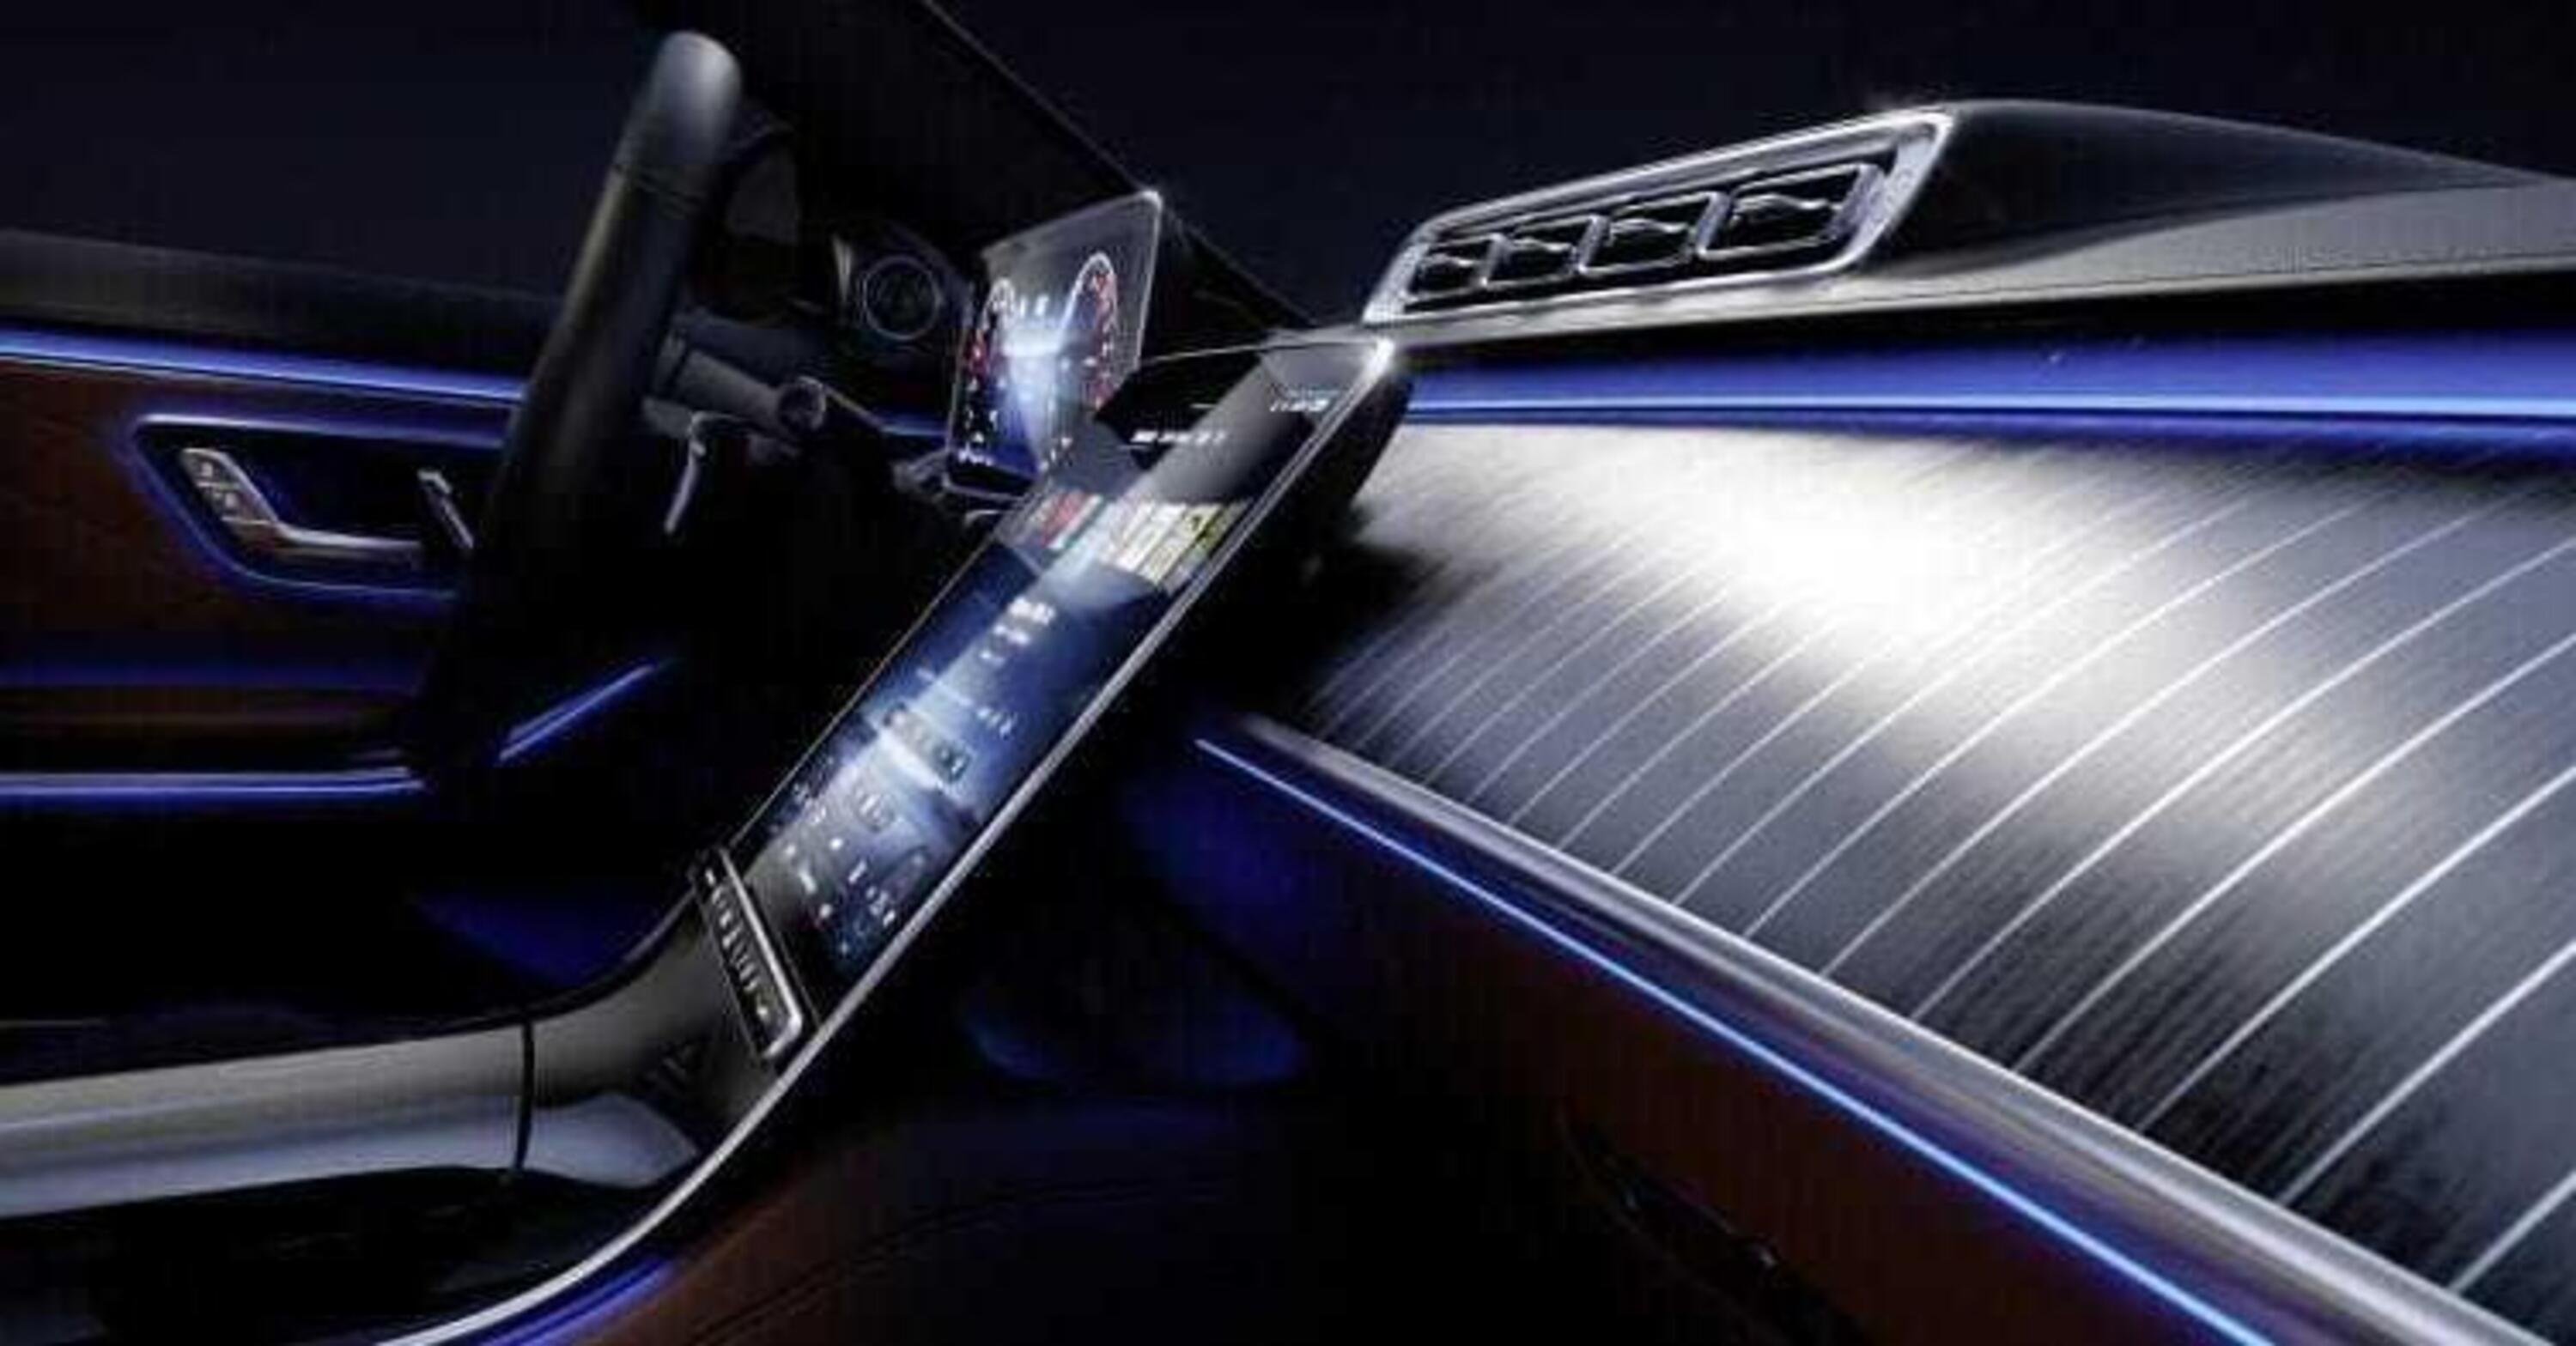 Mercedes-Benz nuova Classe S: interni lusso-tech con legno, 250 LED e aria purificata